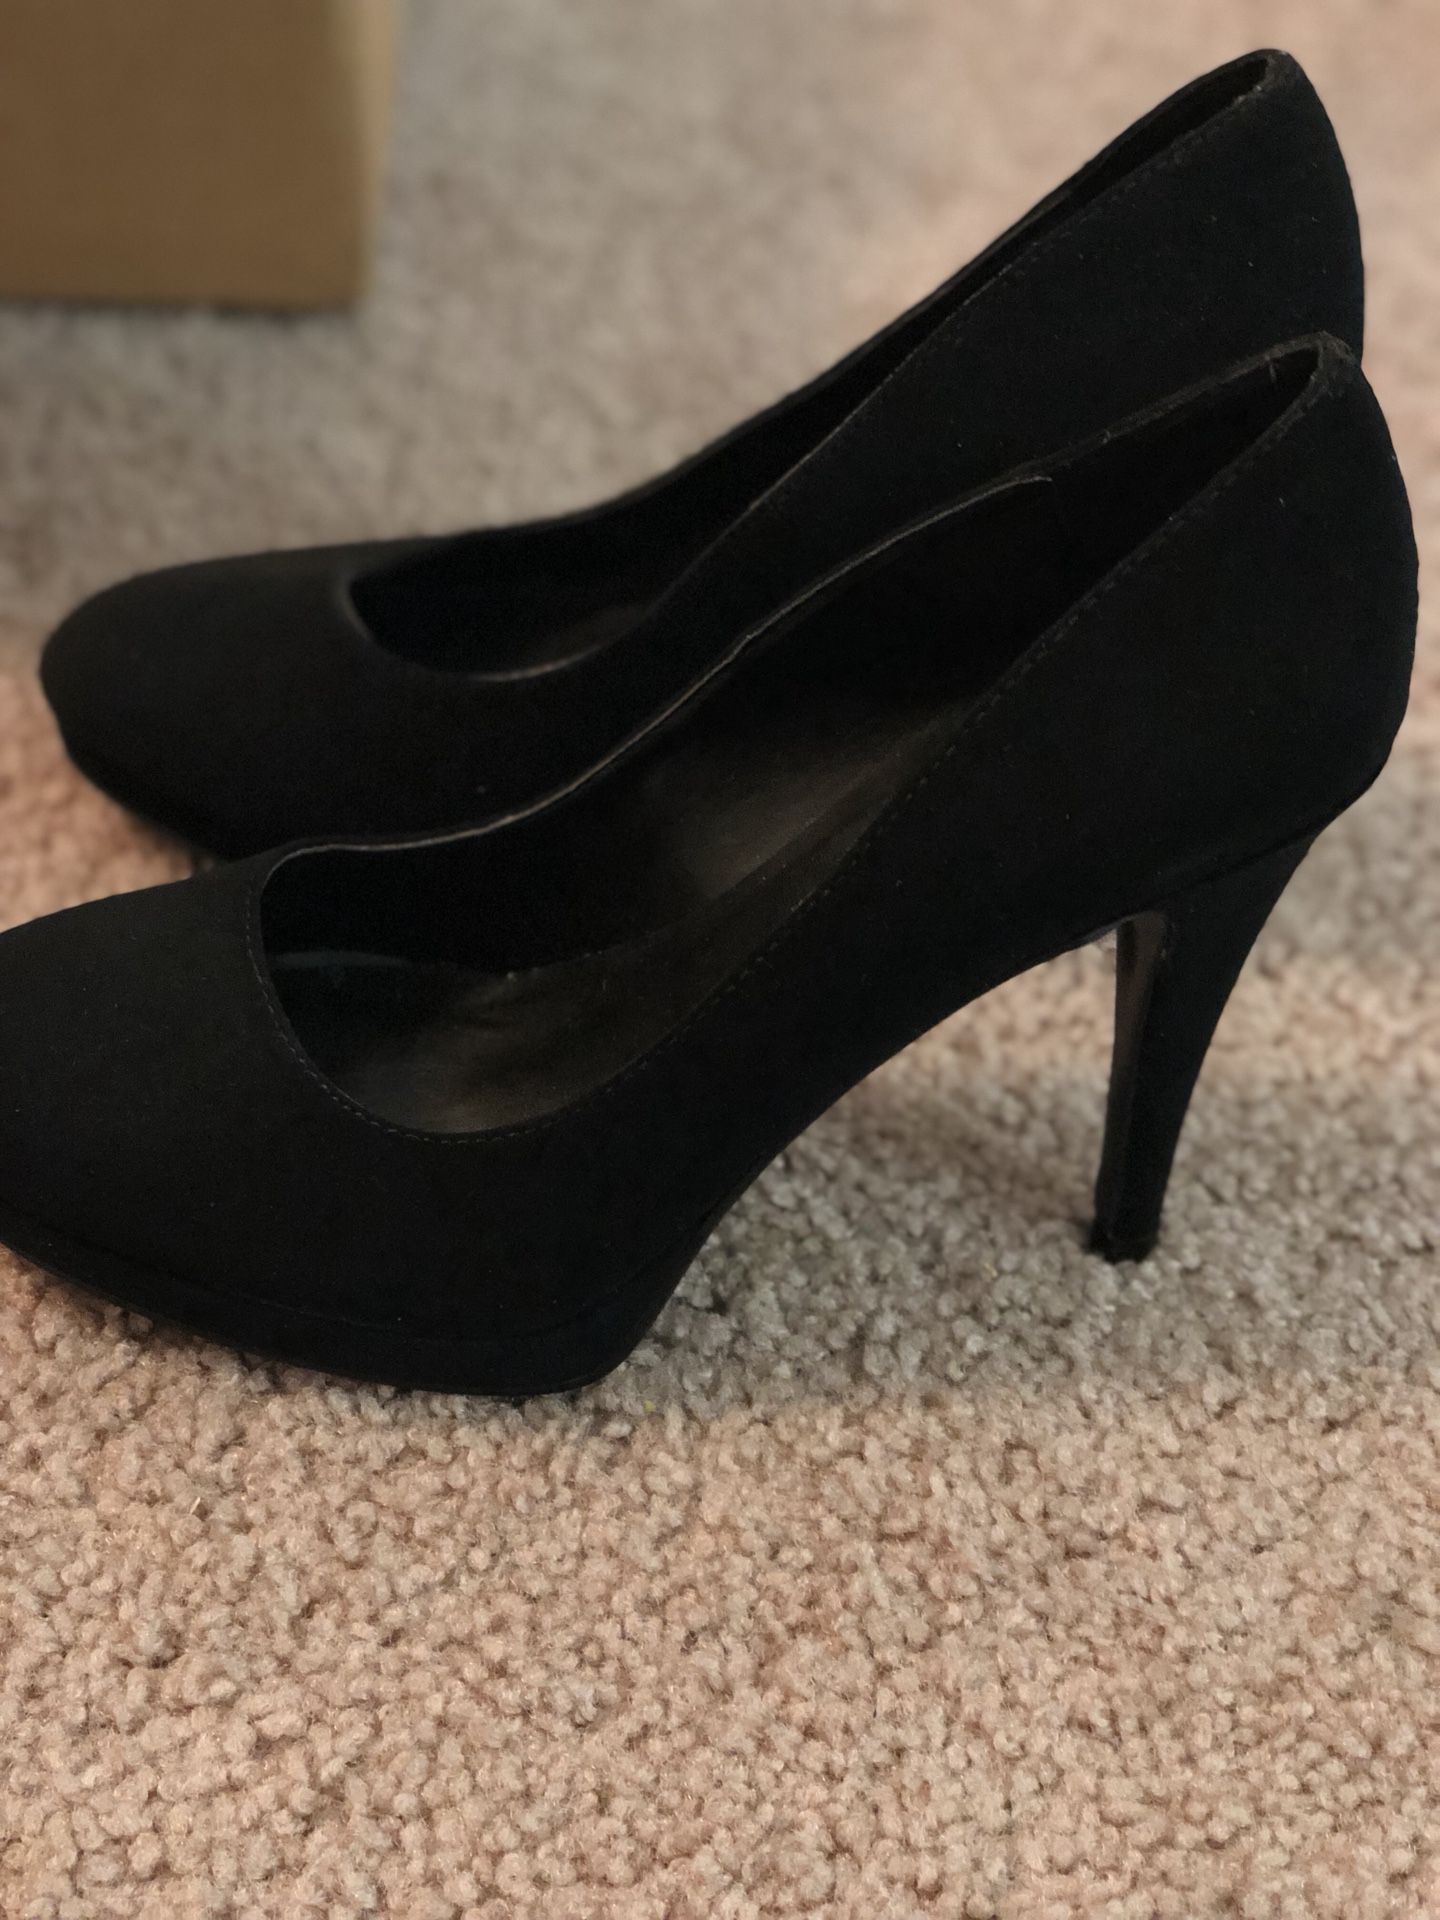 Black suede heels like new (7.5)